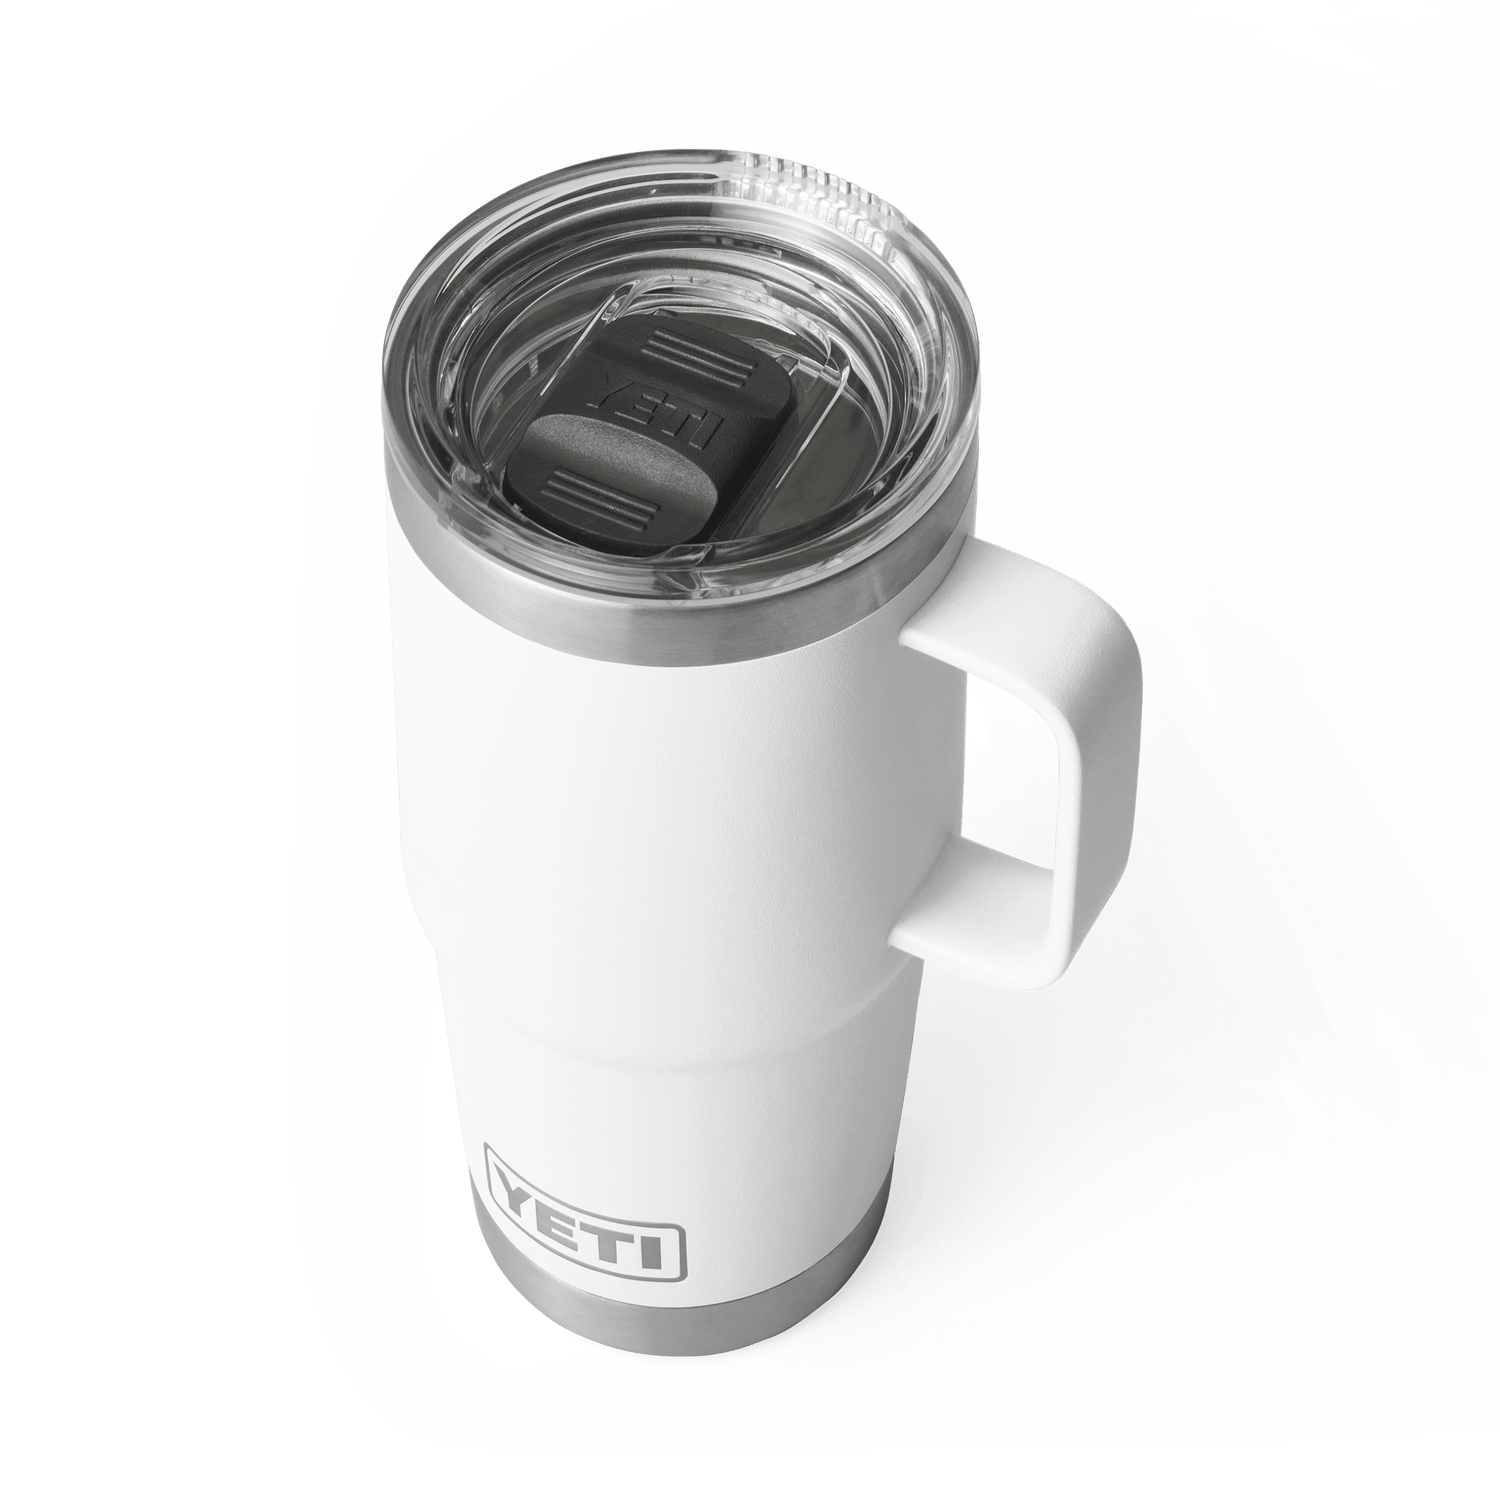 YETI® Rambler 887 ml Travel Mug – YETI EUROPE